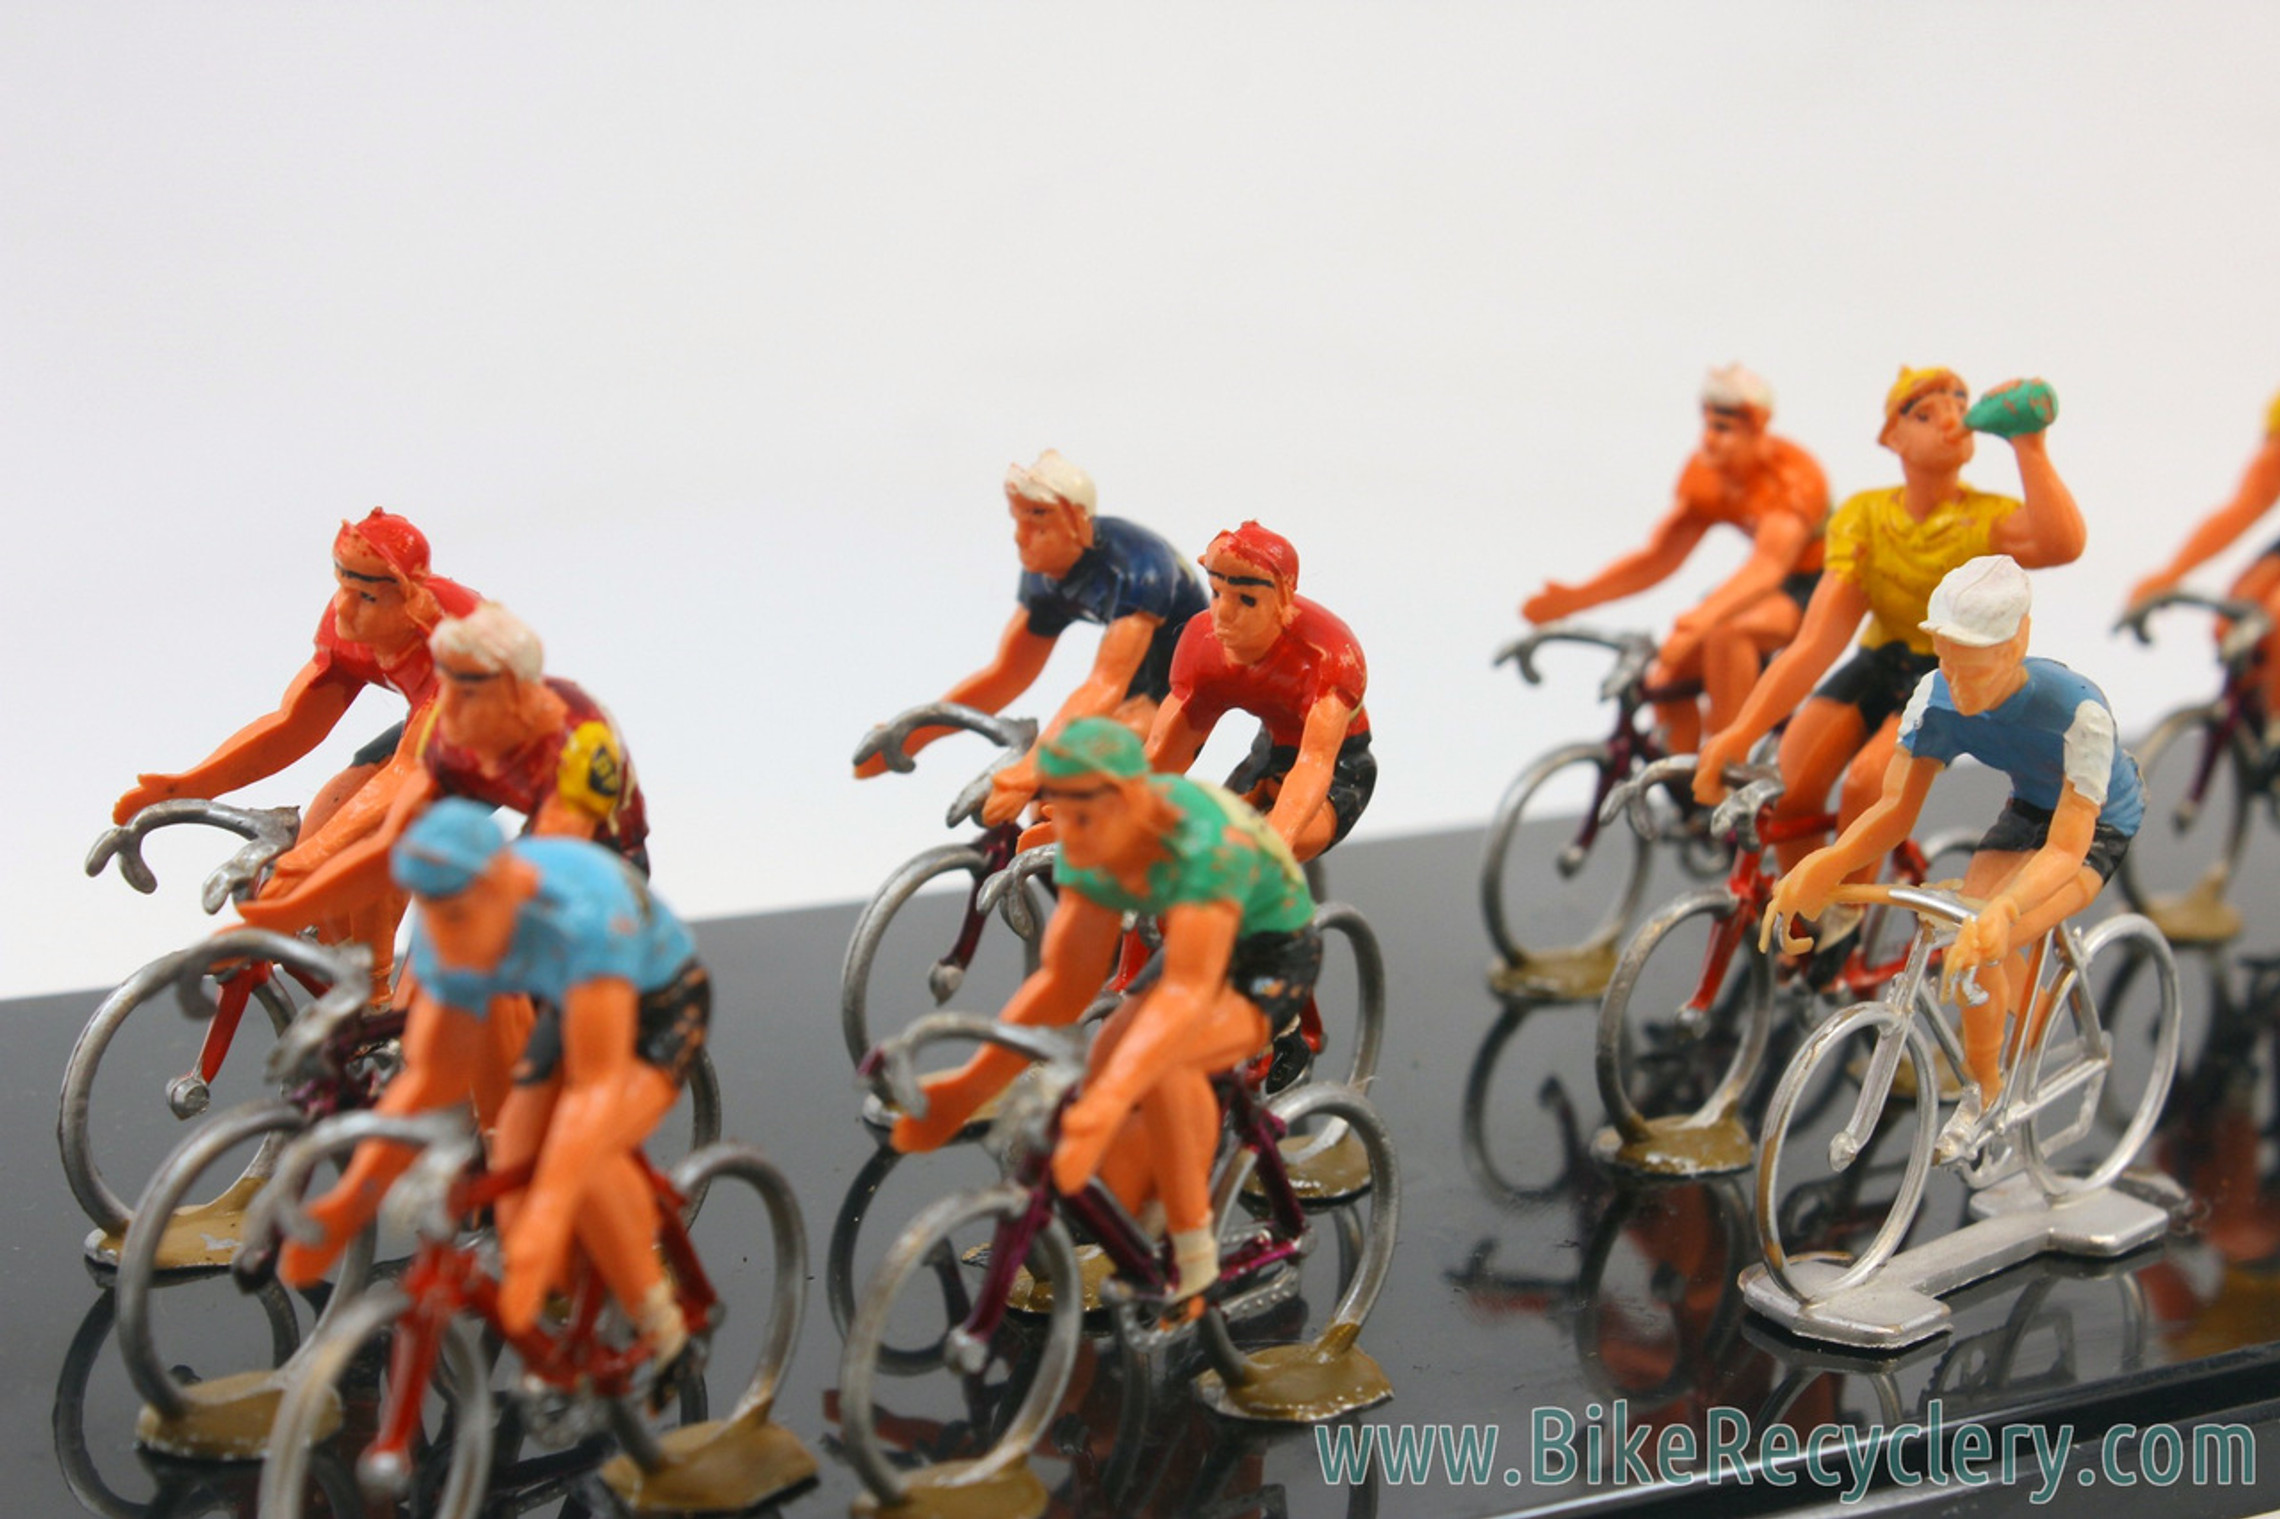 Cyclistes Roger Collector's - Le Tour de France miniature et sa caravane